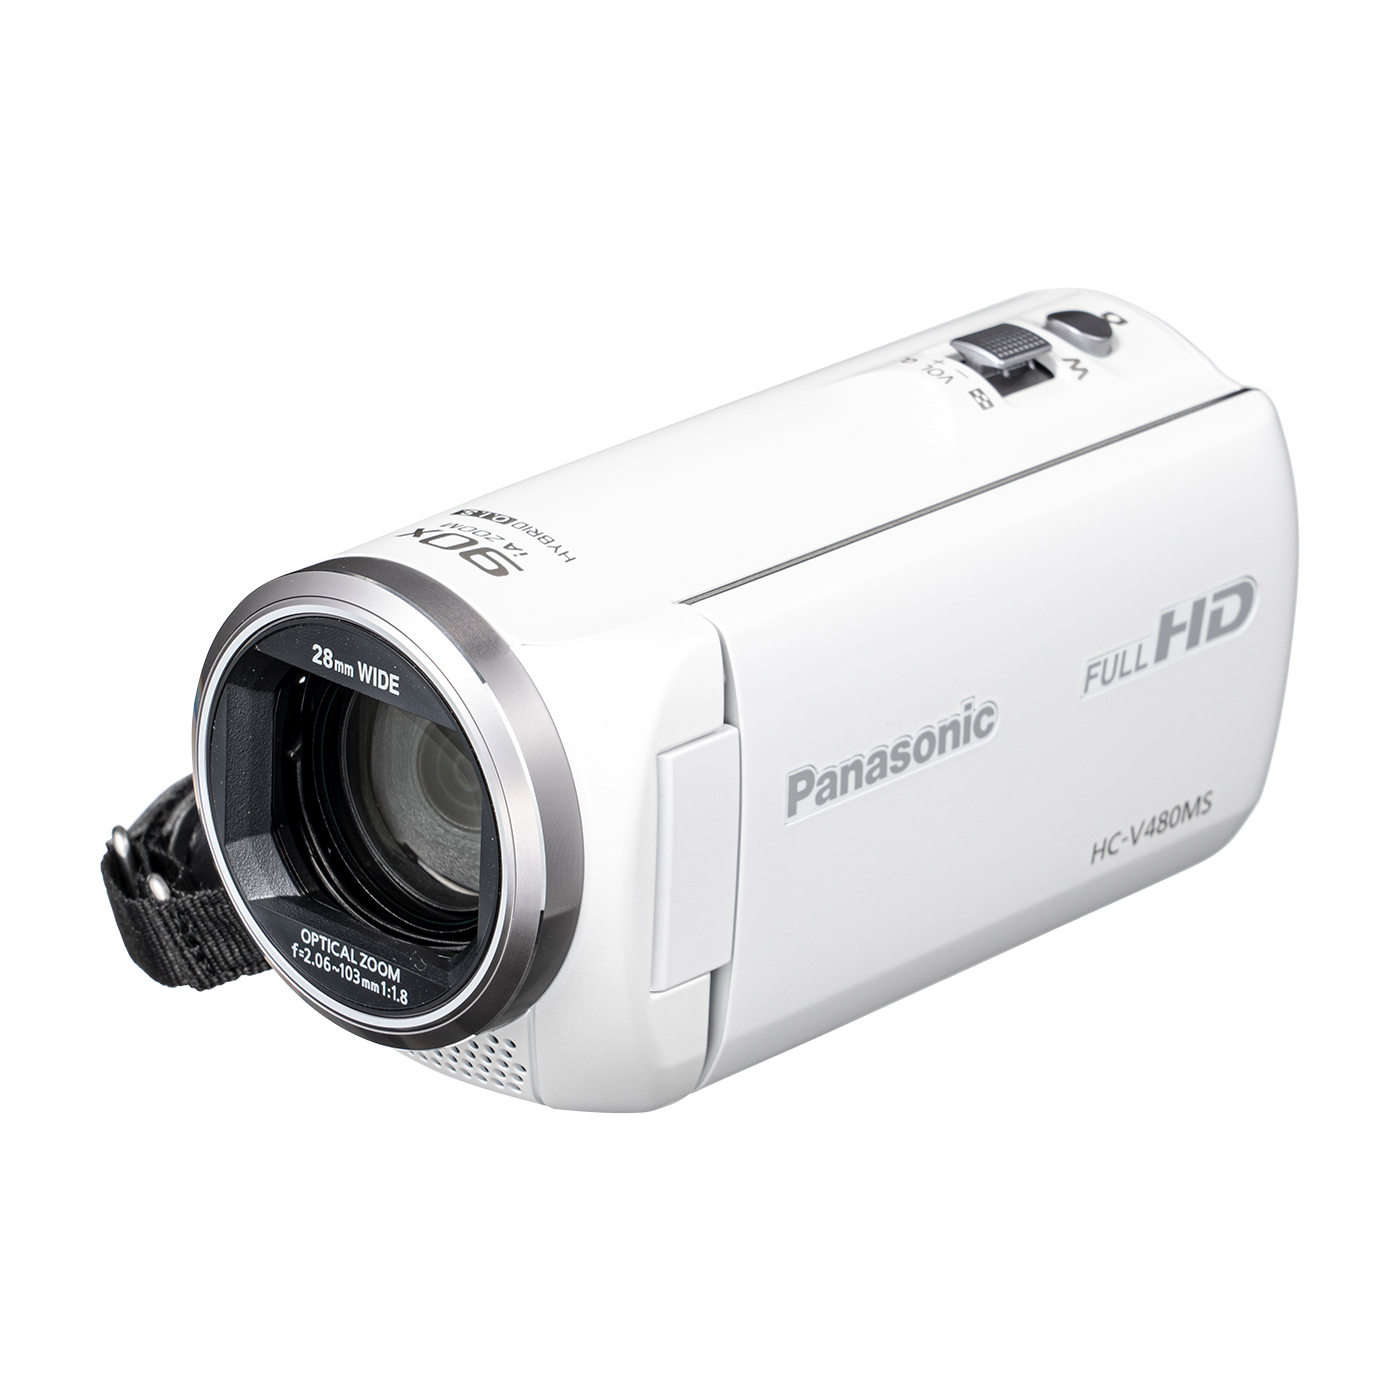 パナソニック HDビデオカメラ V480MS ブラック HC-V480MS-K - ビデオカメラ